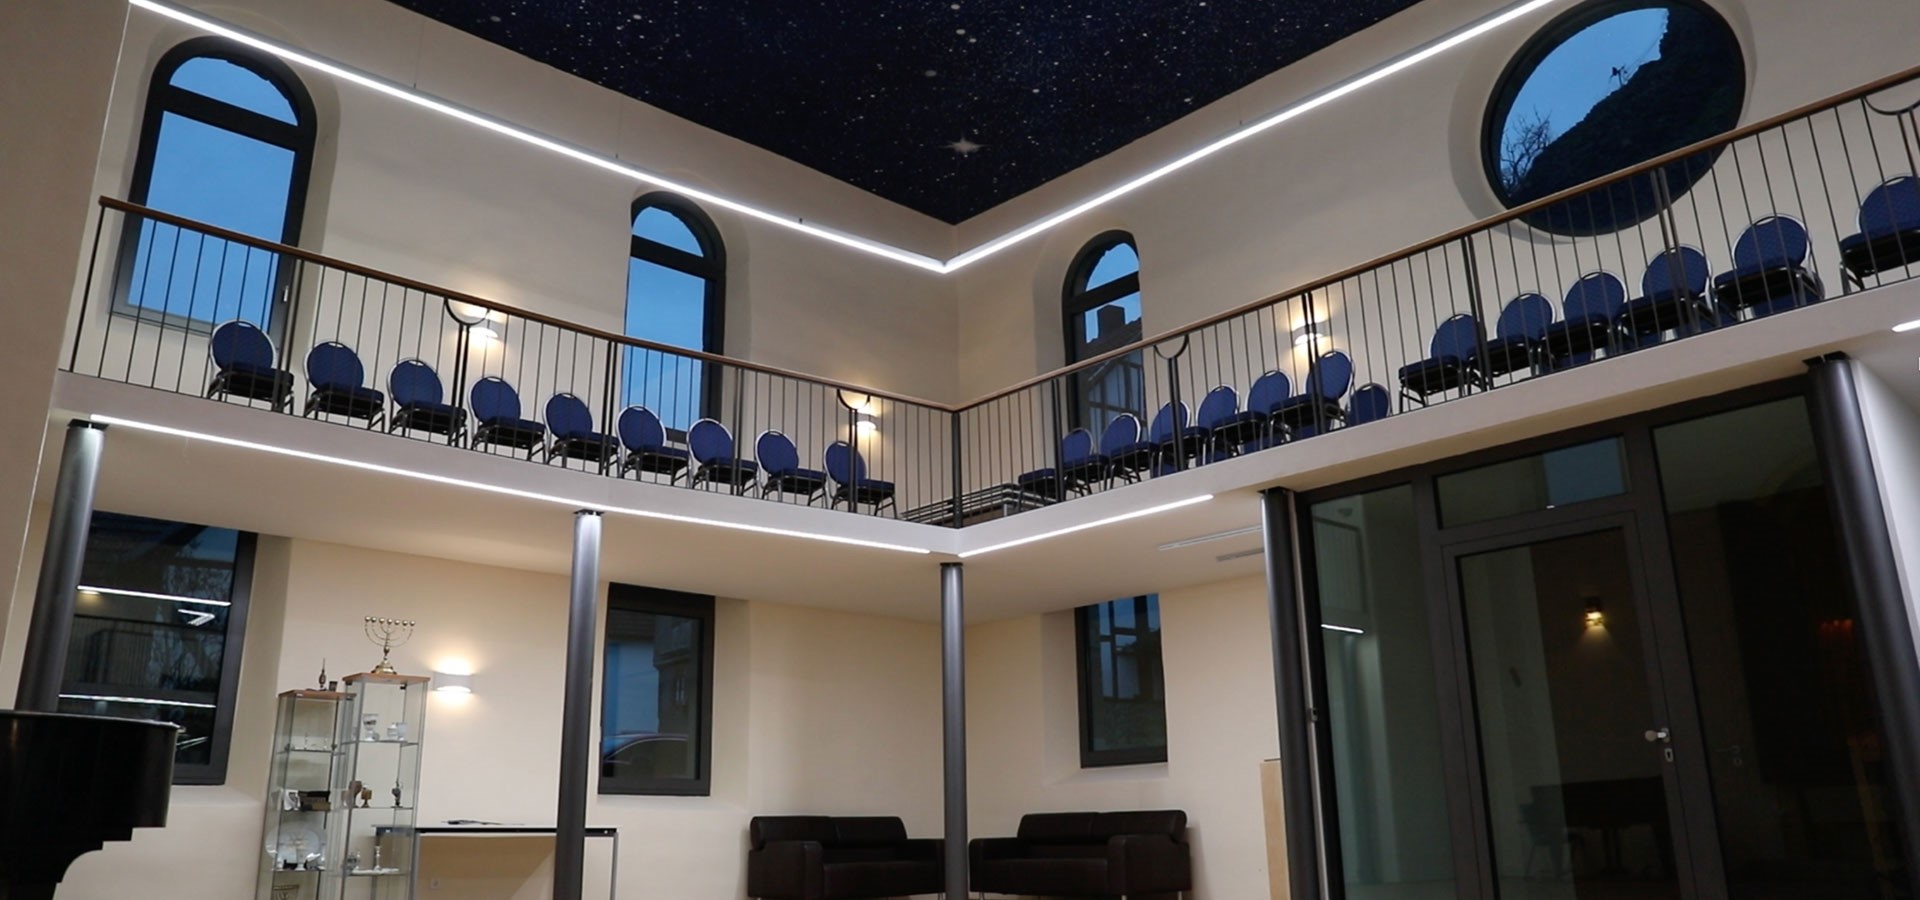 Kirchenbeleuchtung Synagoge Innen LED Leuchte Luxsystem HADLER